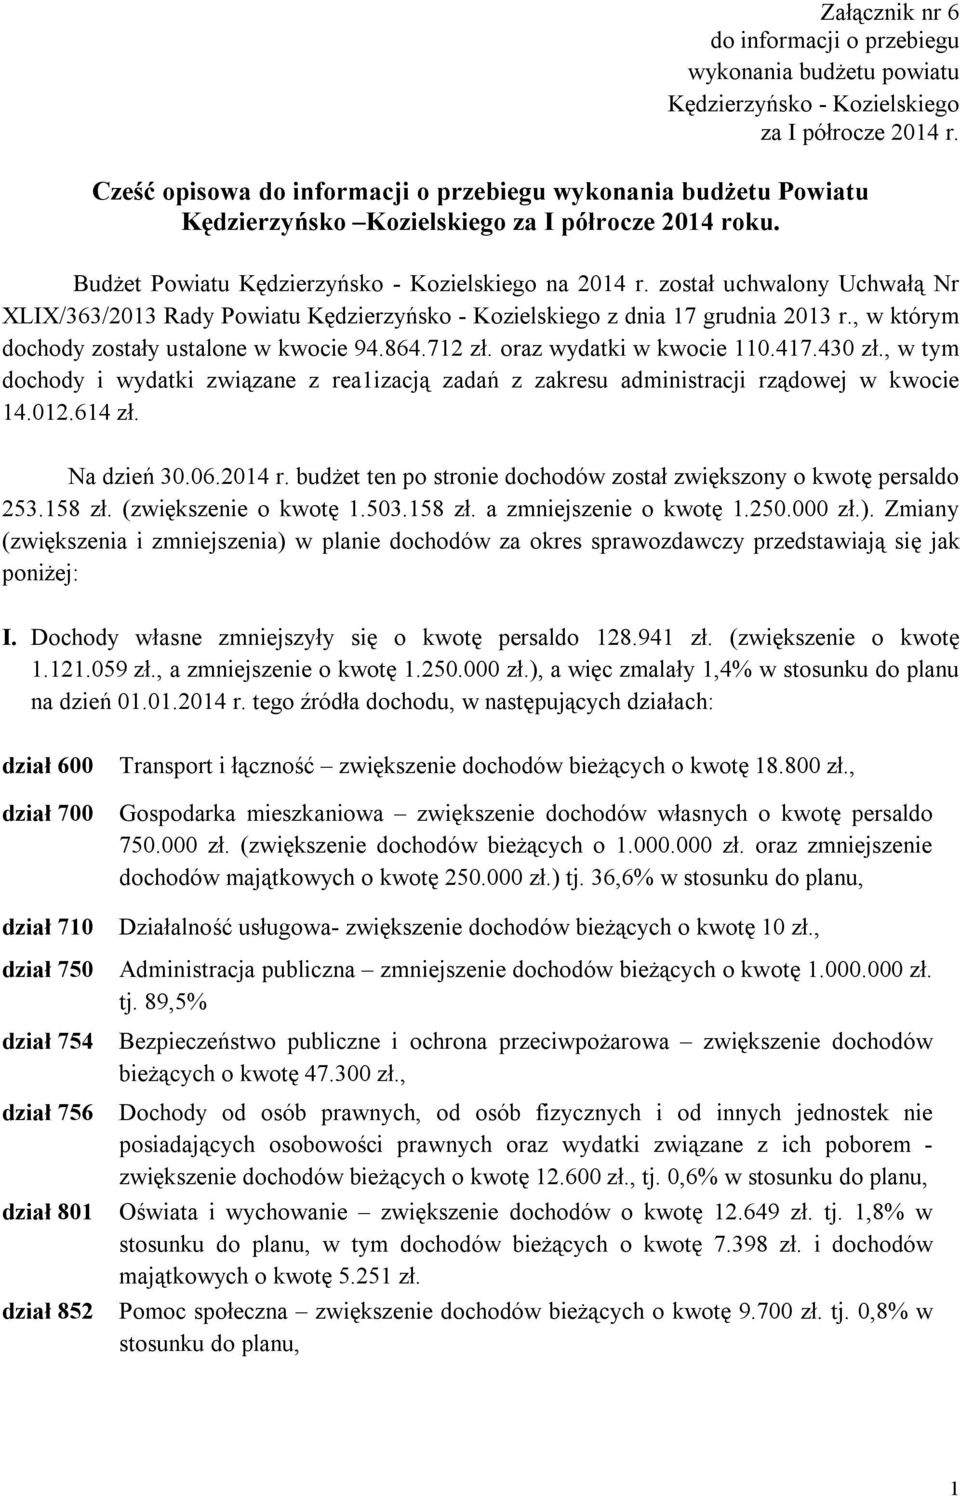 został uchwalony Uchwałą Nr XLIX/363/2013 Rady Powiatu Kędzierzyńsko - Kozielskiego z dnia 17 grudnia 2013 r., w którym dochody zostały ustalone w kwocie 94.864.712 zł. oraz wydatki w kwocie 110.417.